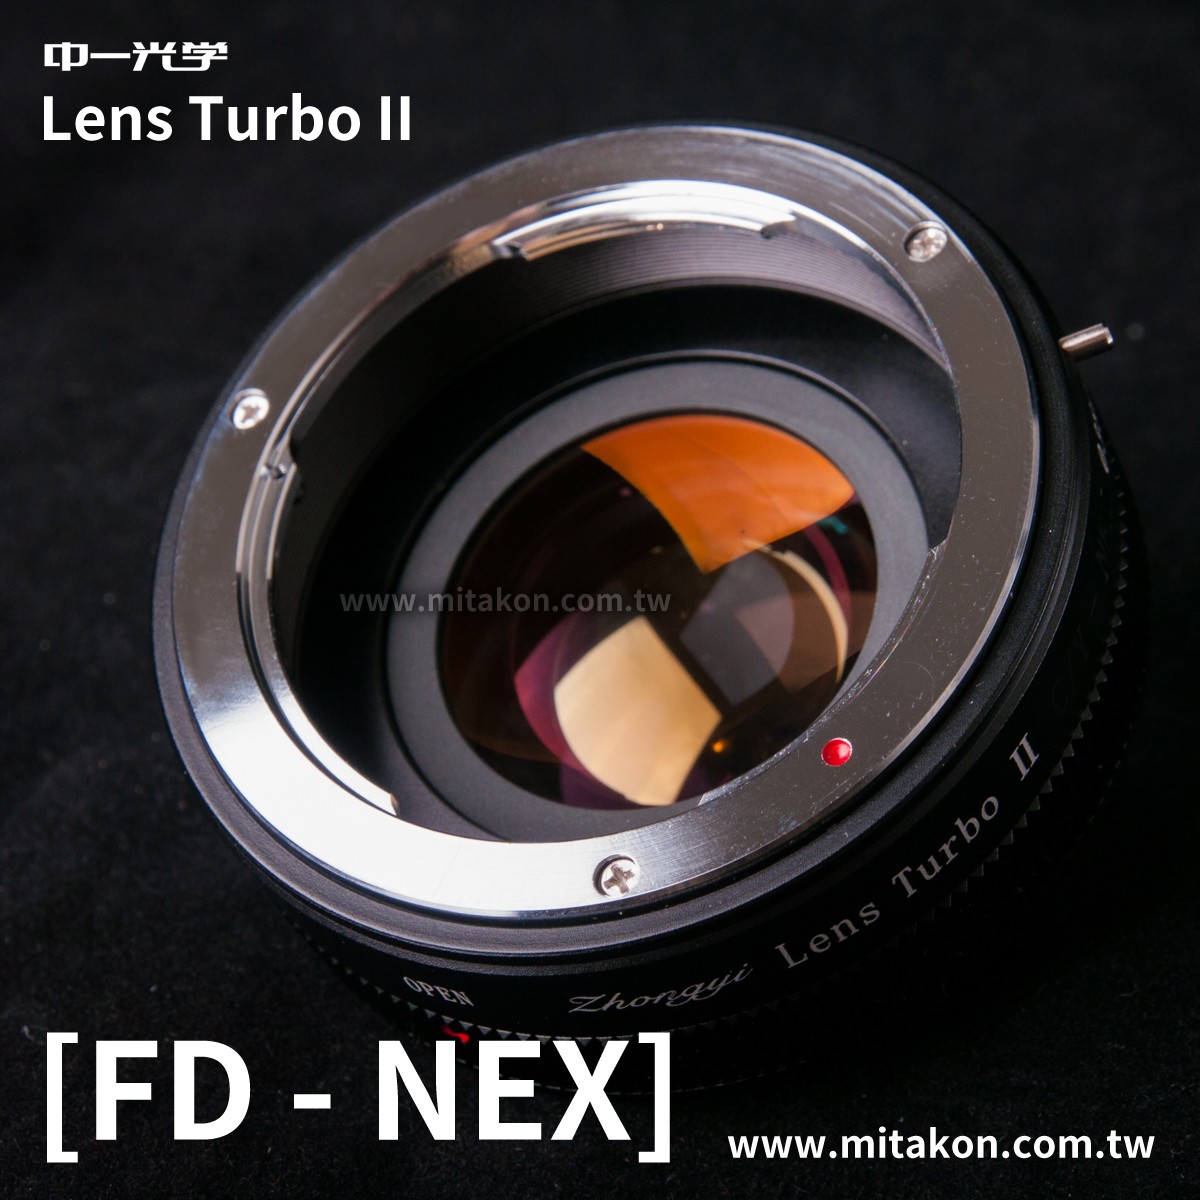 減焦環 2代 Lens Turbo II Canon FD-NEX E系列相機 減焦增光環